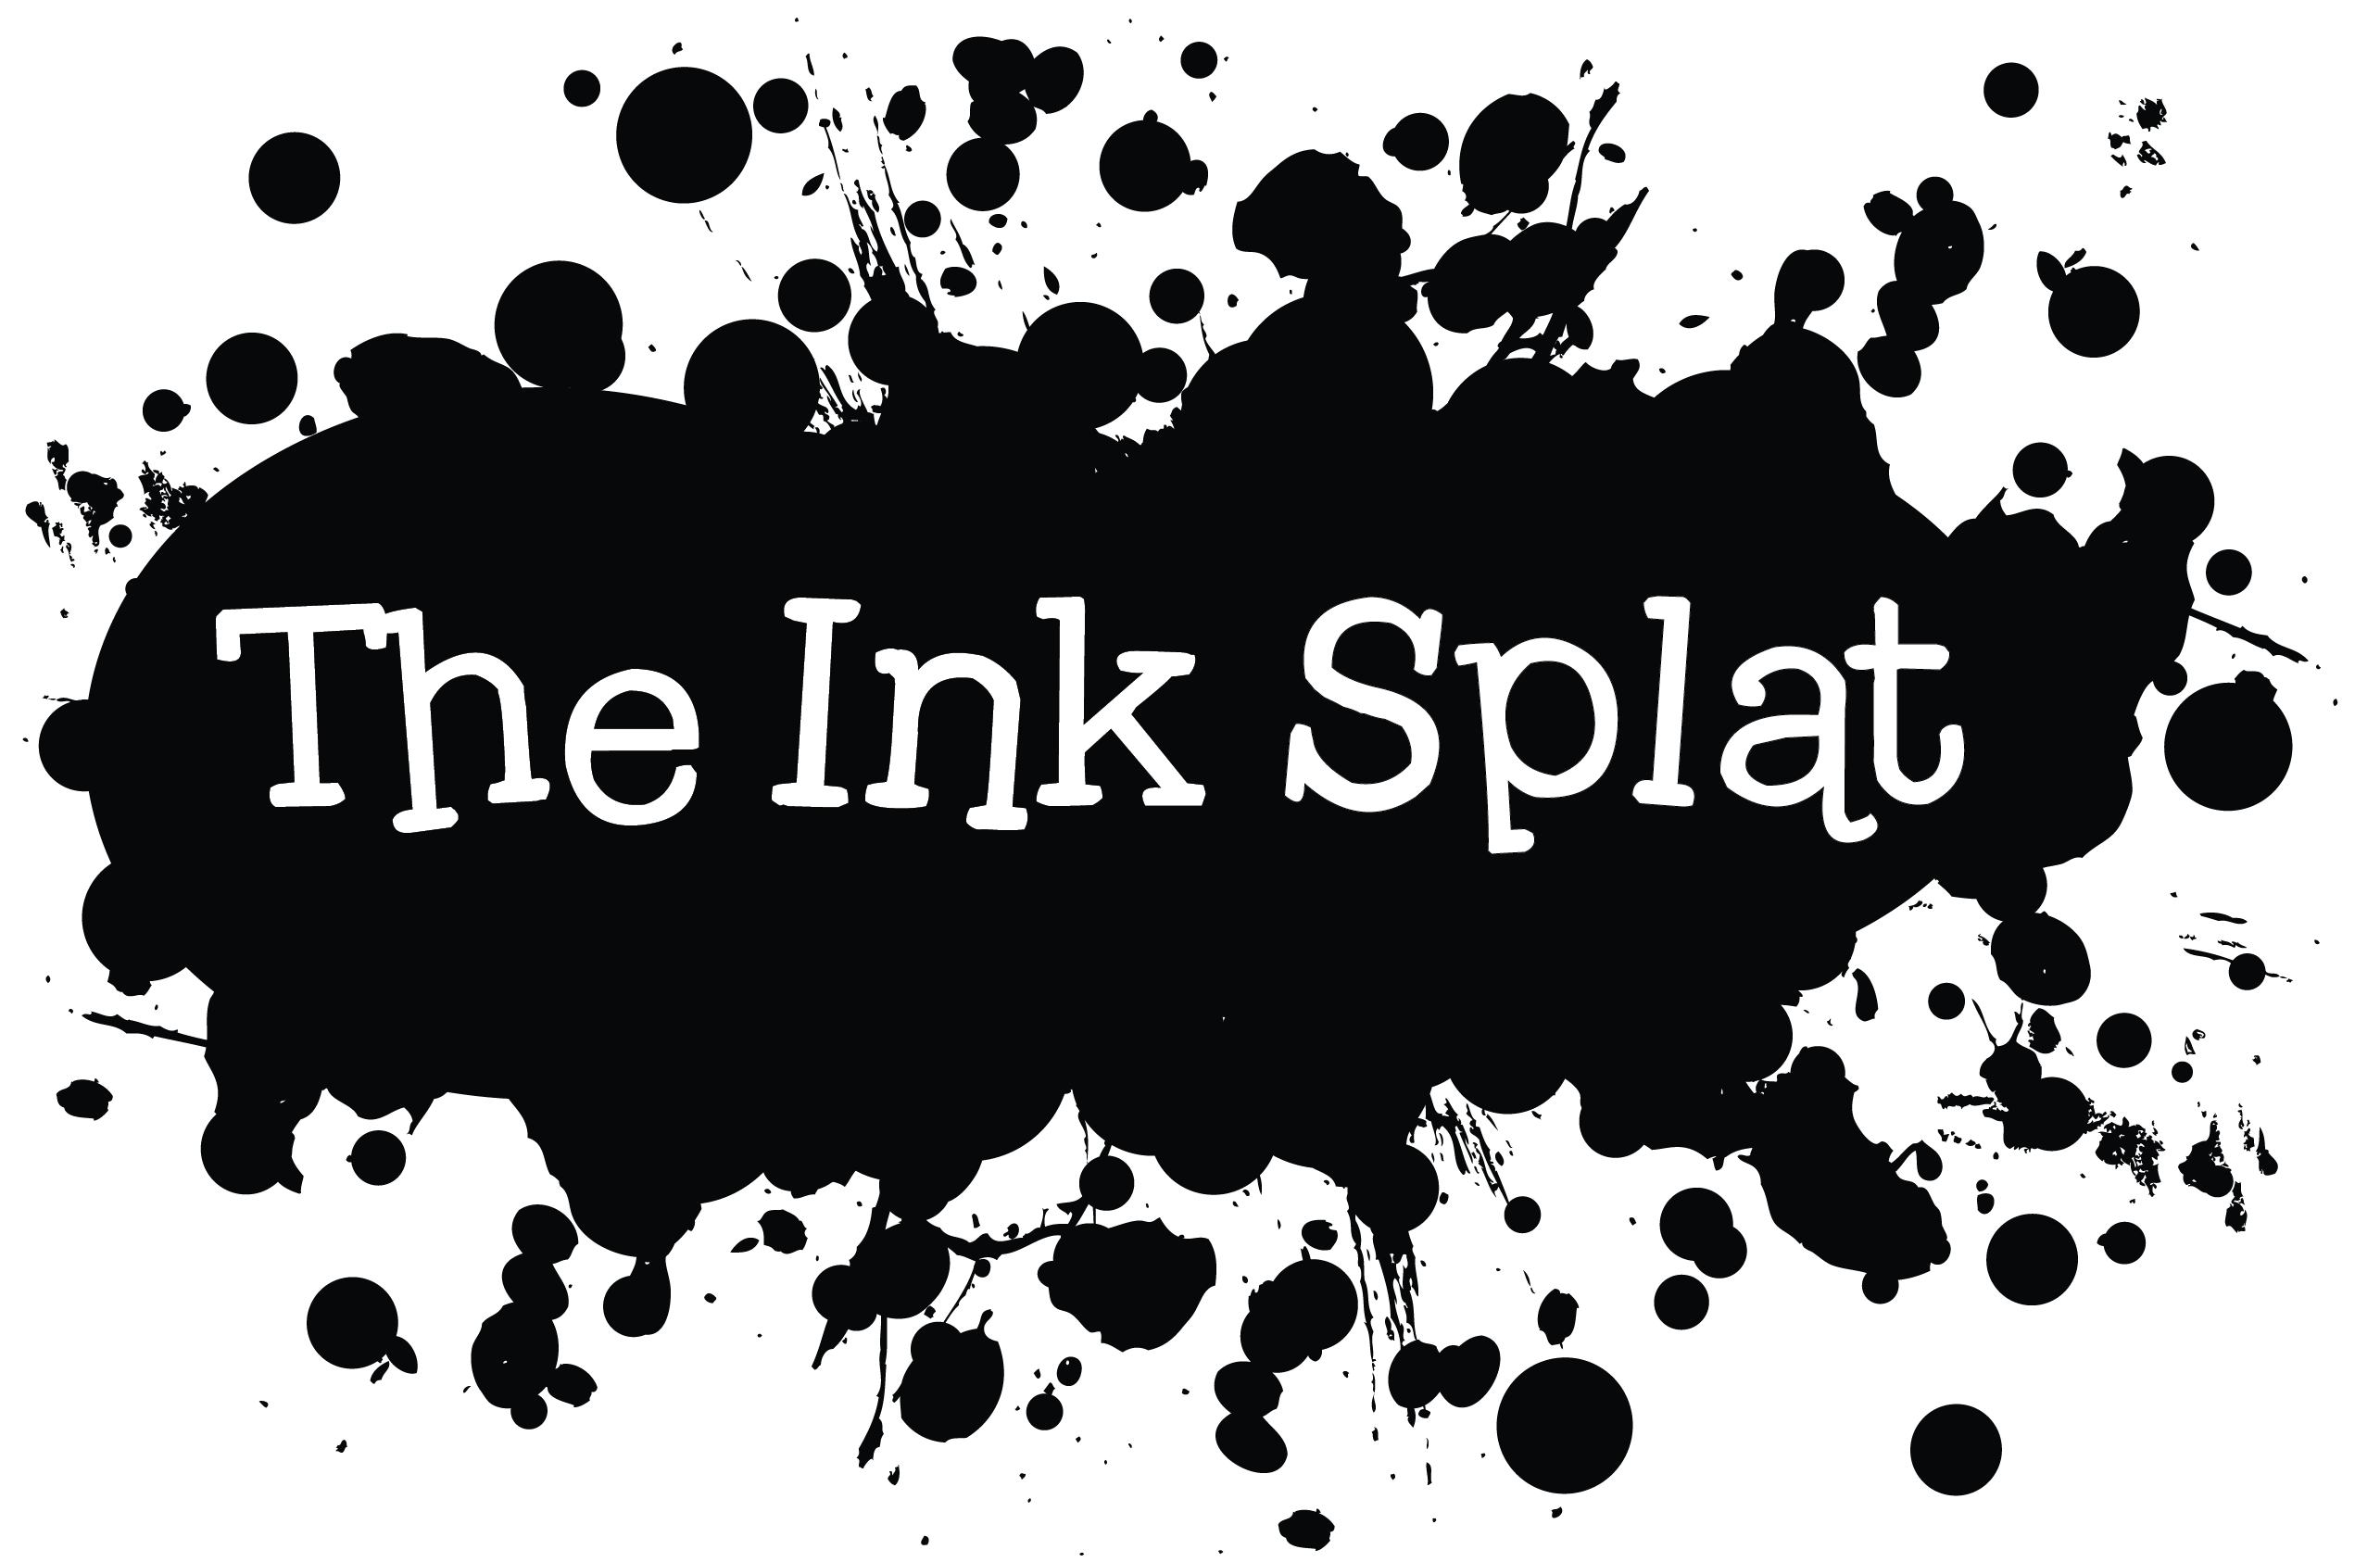 Free Ink Splat Png, Download Free Ink Splat Png png images, Free ...